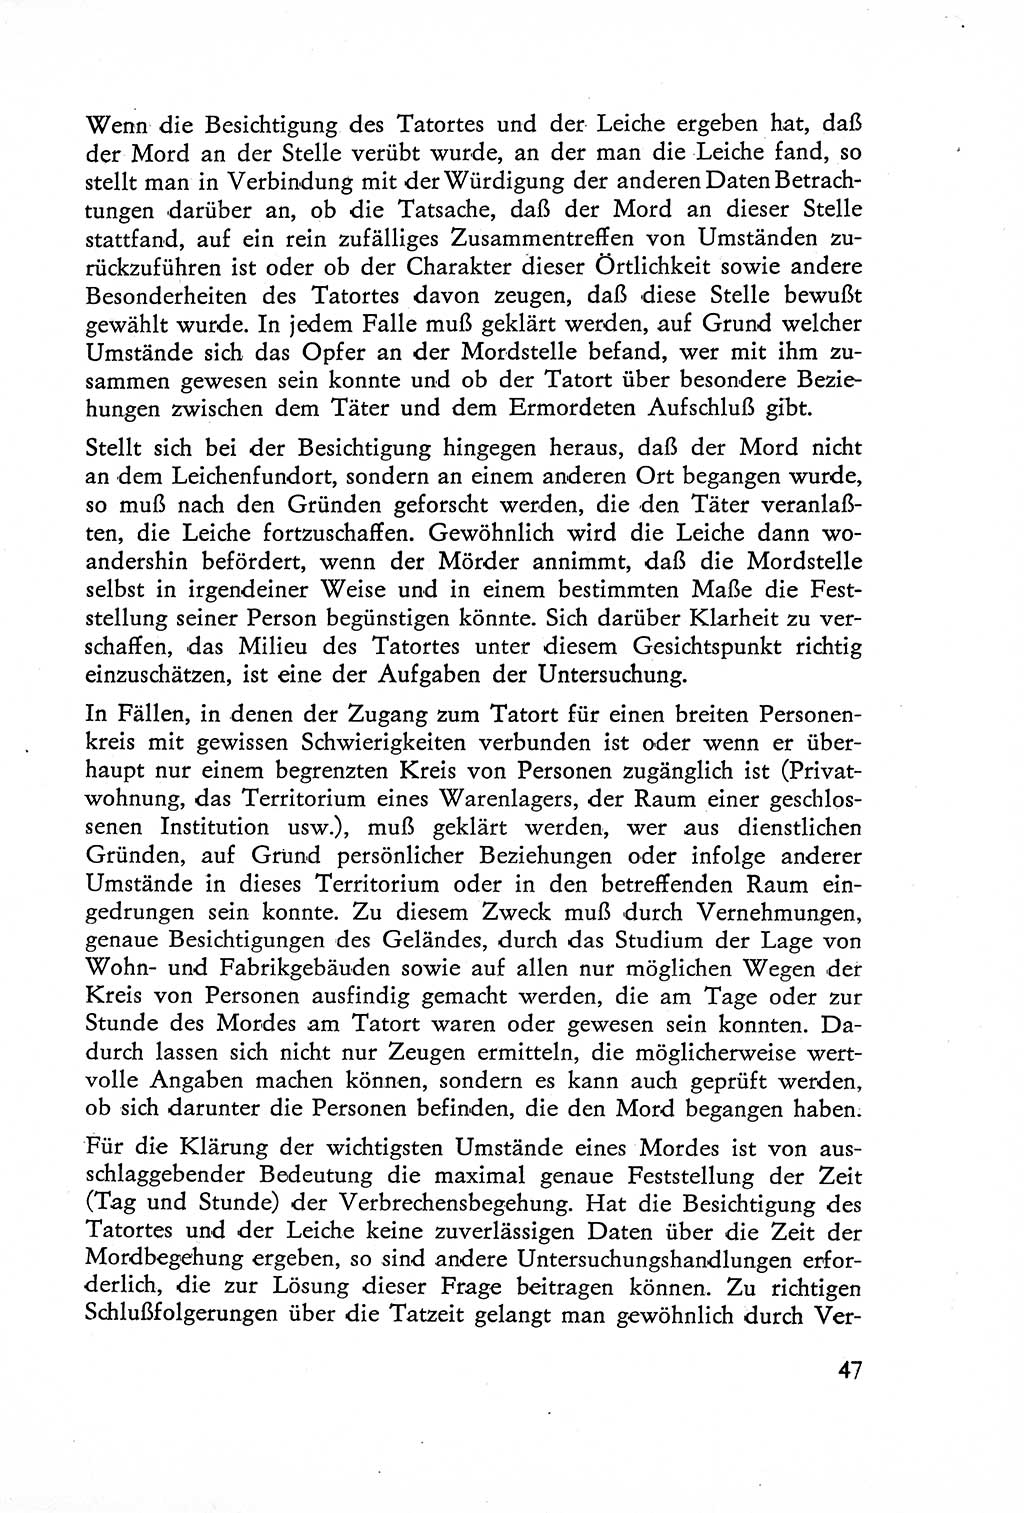 Die Untersuchung einzelner Verbrechensarten [Deutsche Demokratische Republik (DDR)] 1960, Seite 47 (Unters. Verbr.-Art. DDR 1960, S. 47)